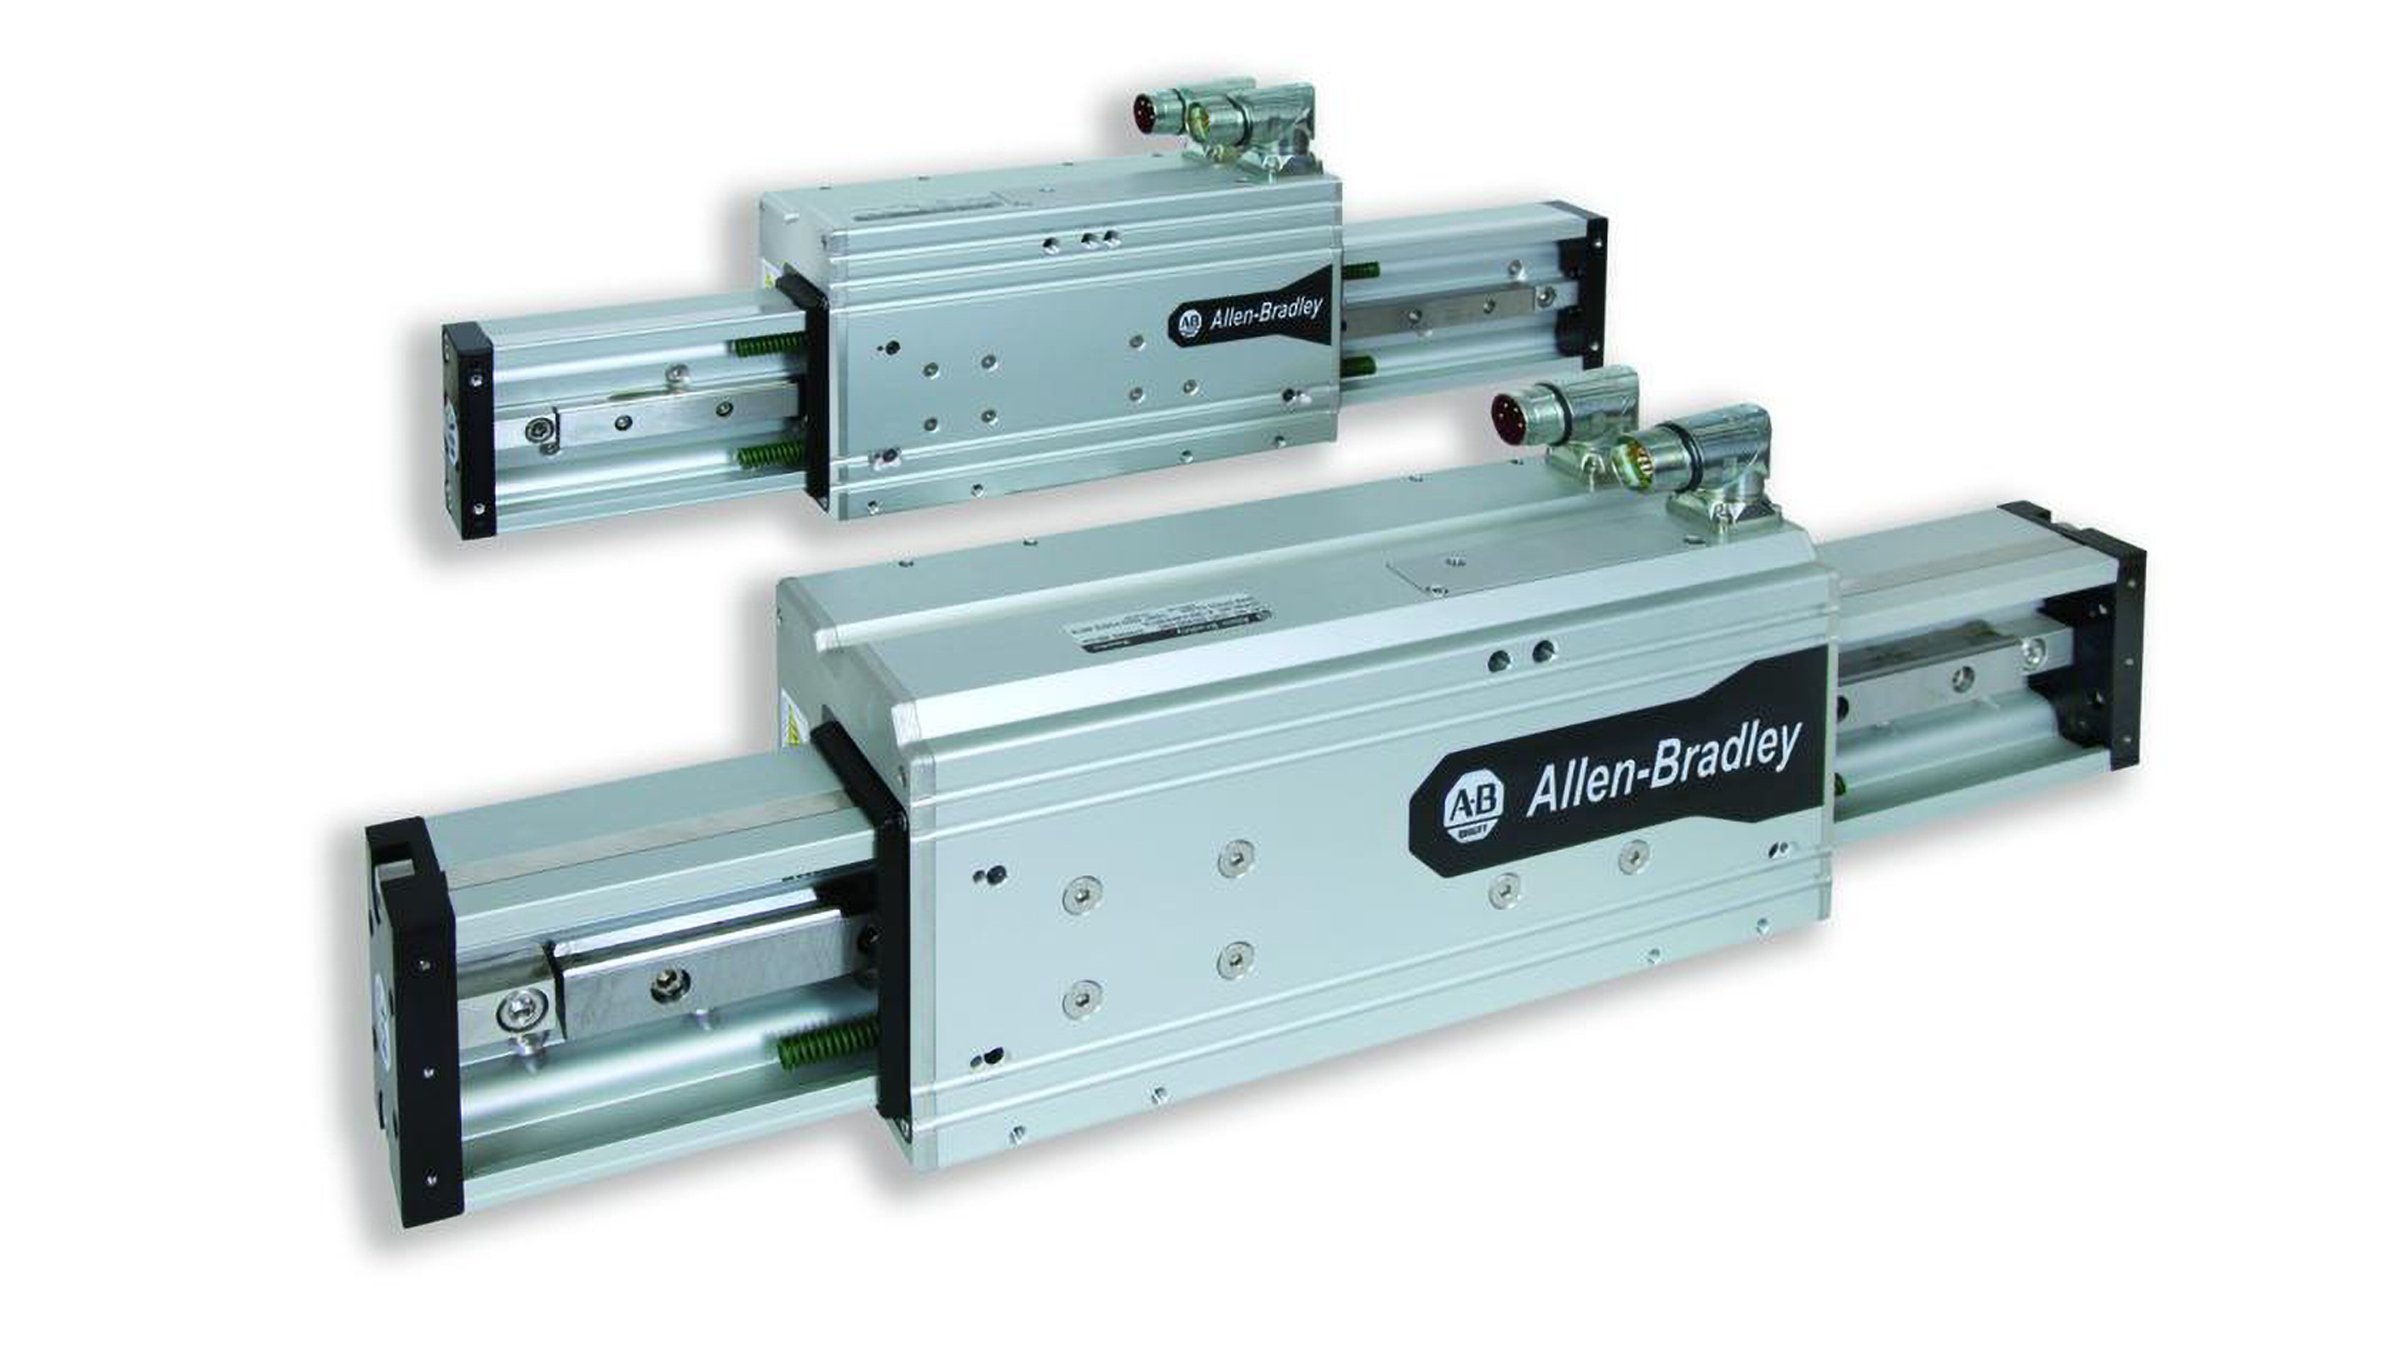 Allen-Bradley Bulletin LDAT 集成直线推进器可提供开箱即用的高速承载直线运动功能，并能够推、拉或携带负载。